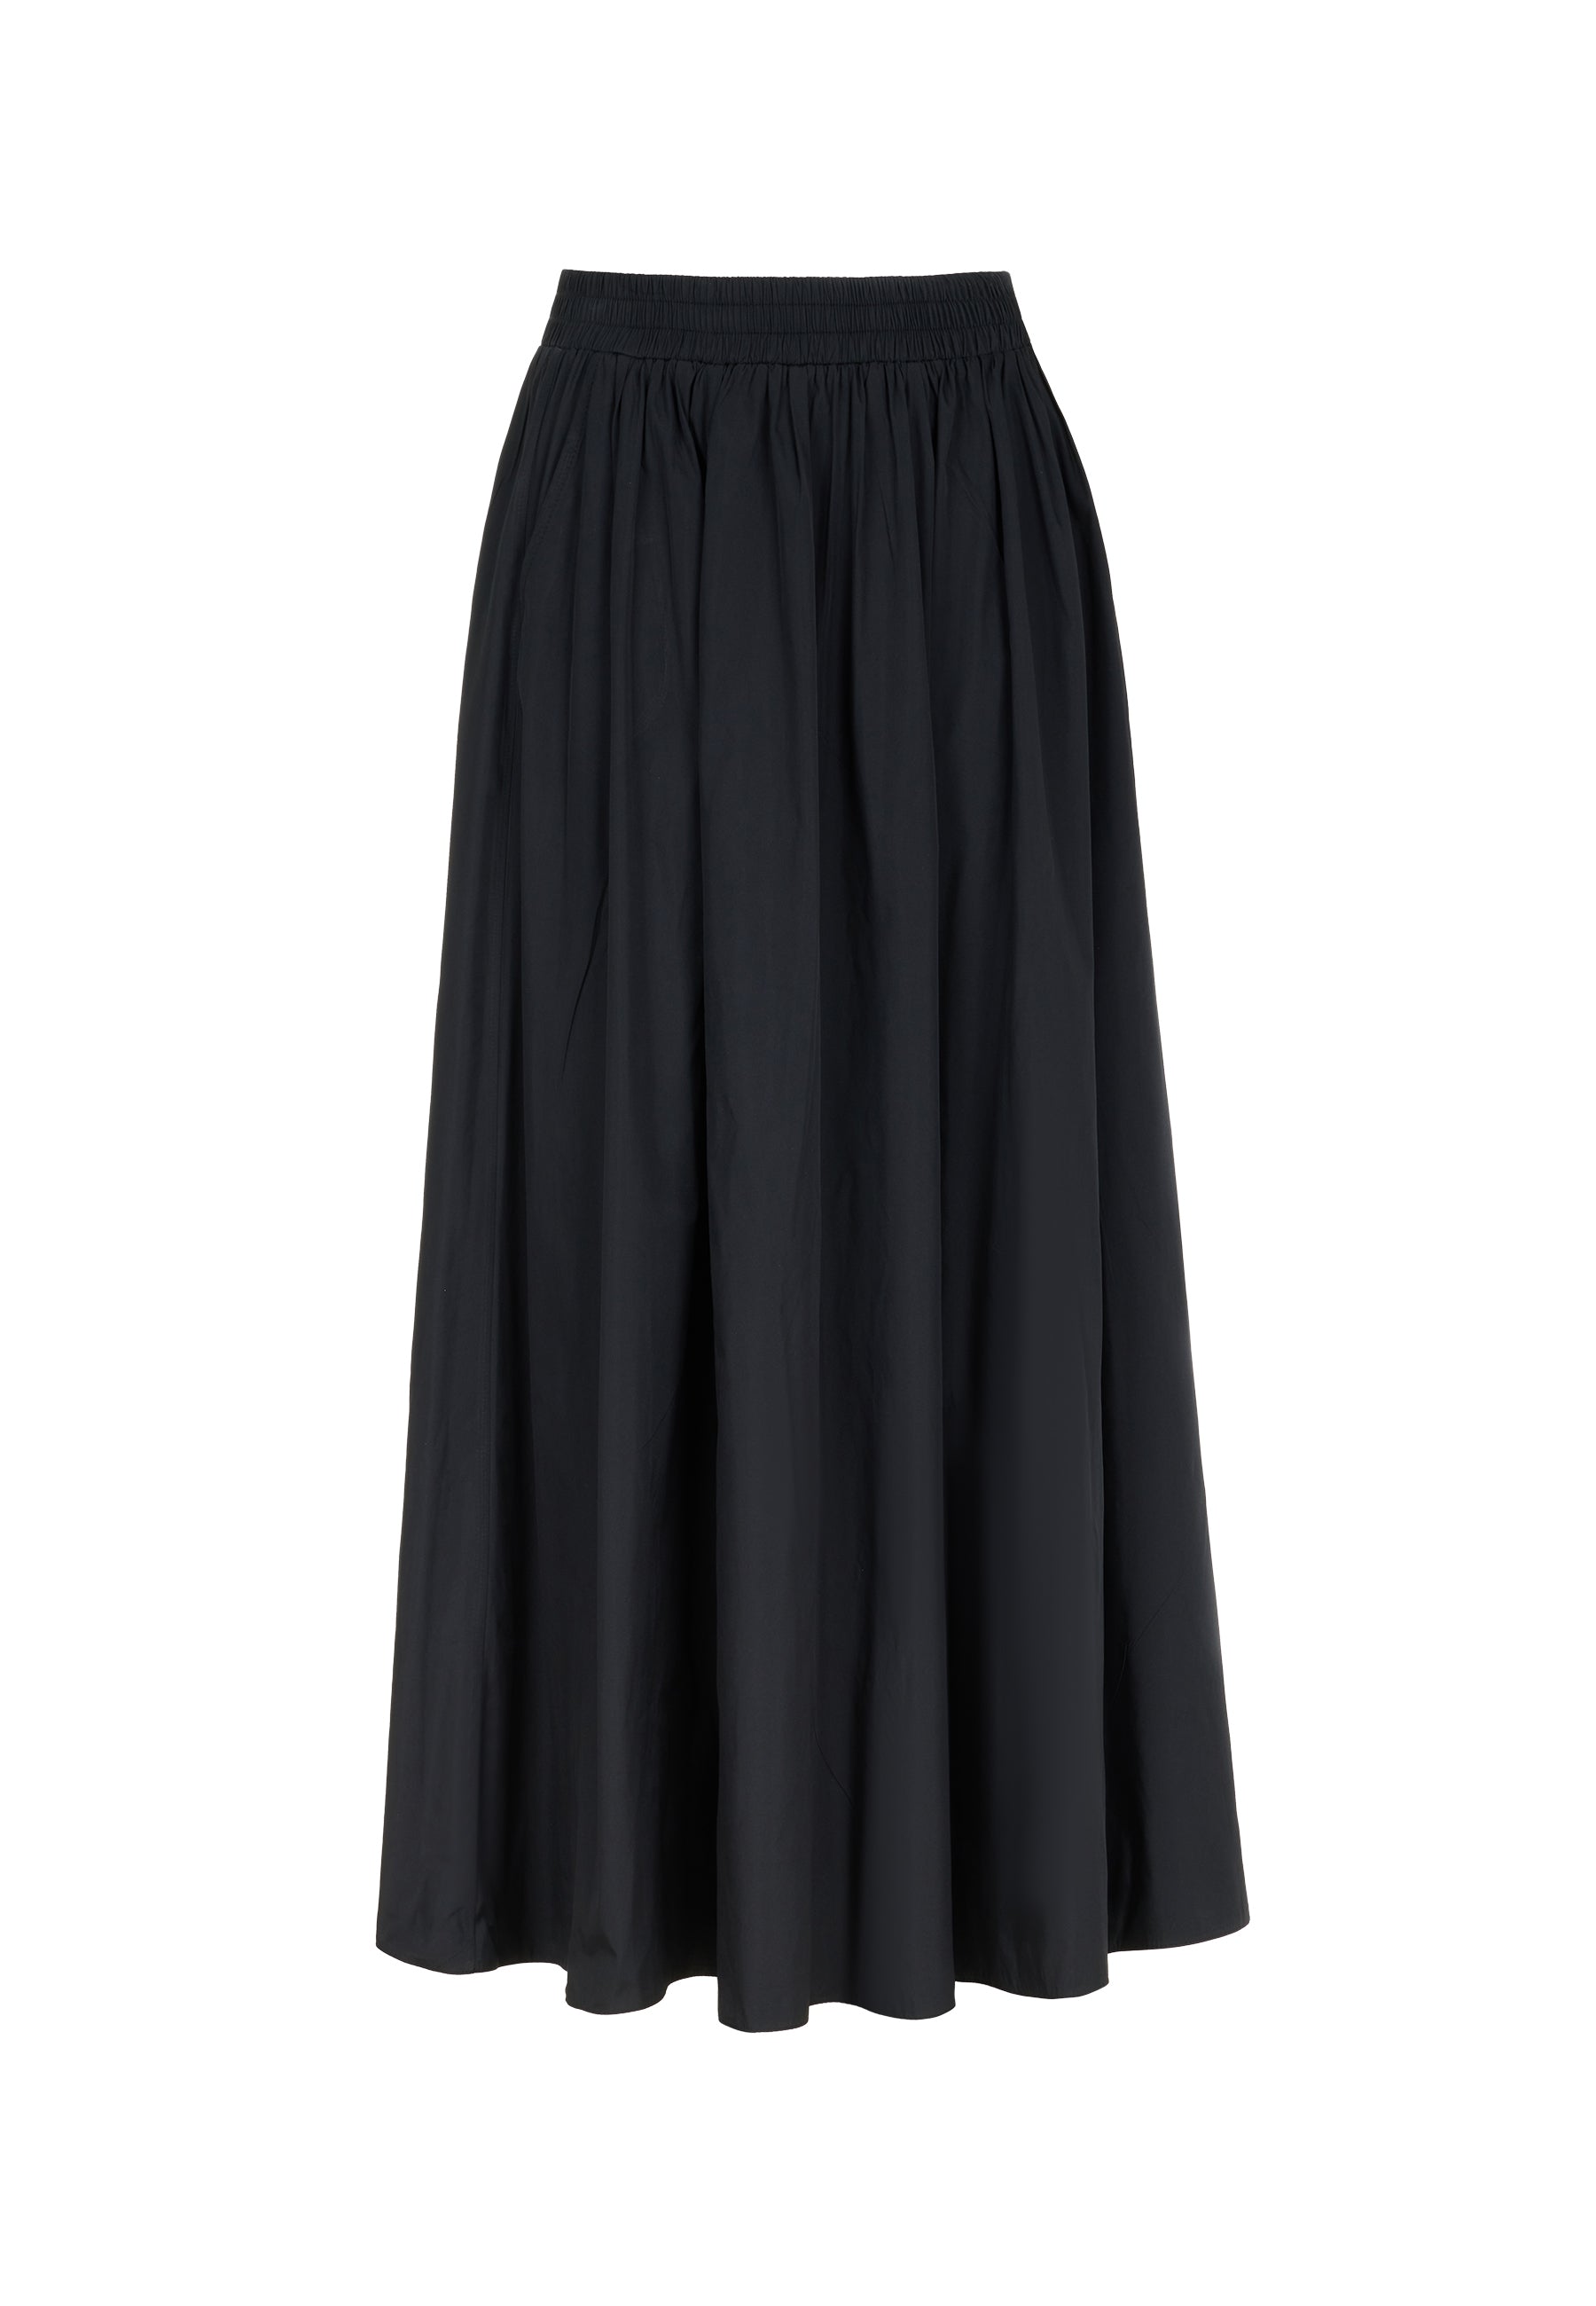 Nocturne Women's Pull-on Maxi Skirt Black